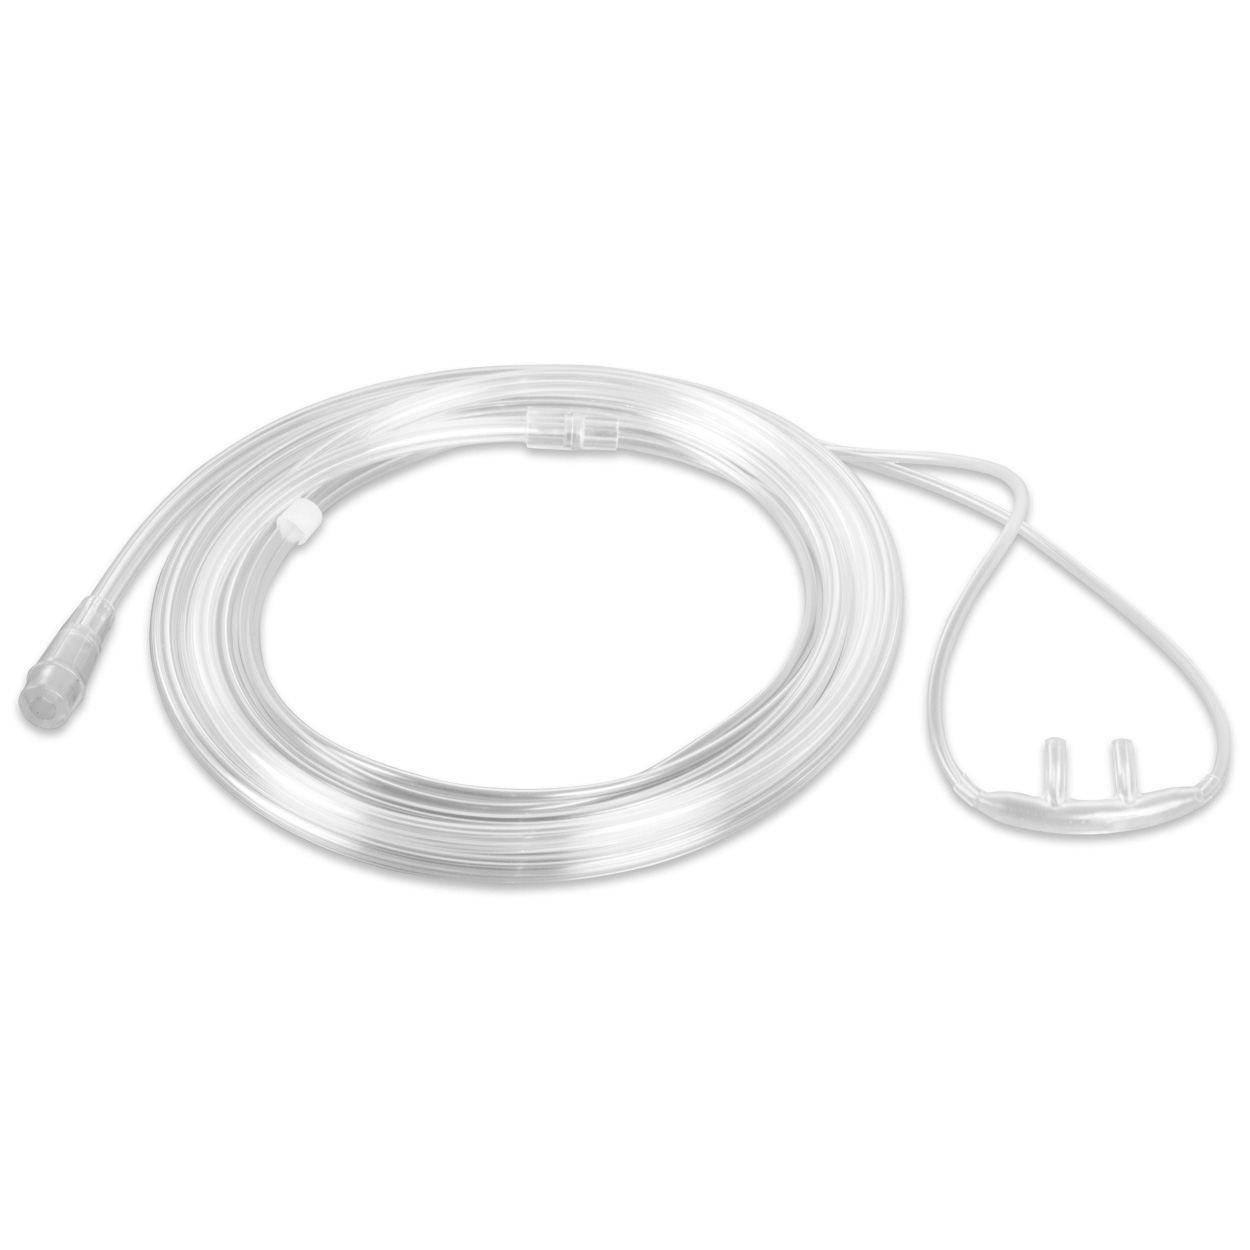 Sauerstoffbrille für Erwachsene mit Standardkonnektor, 2,1 m